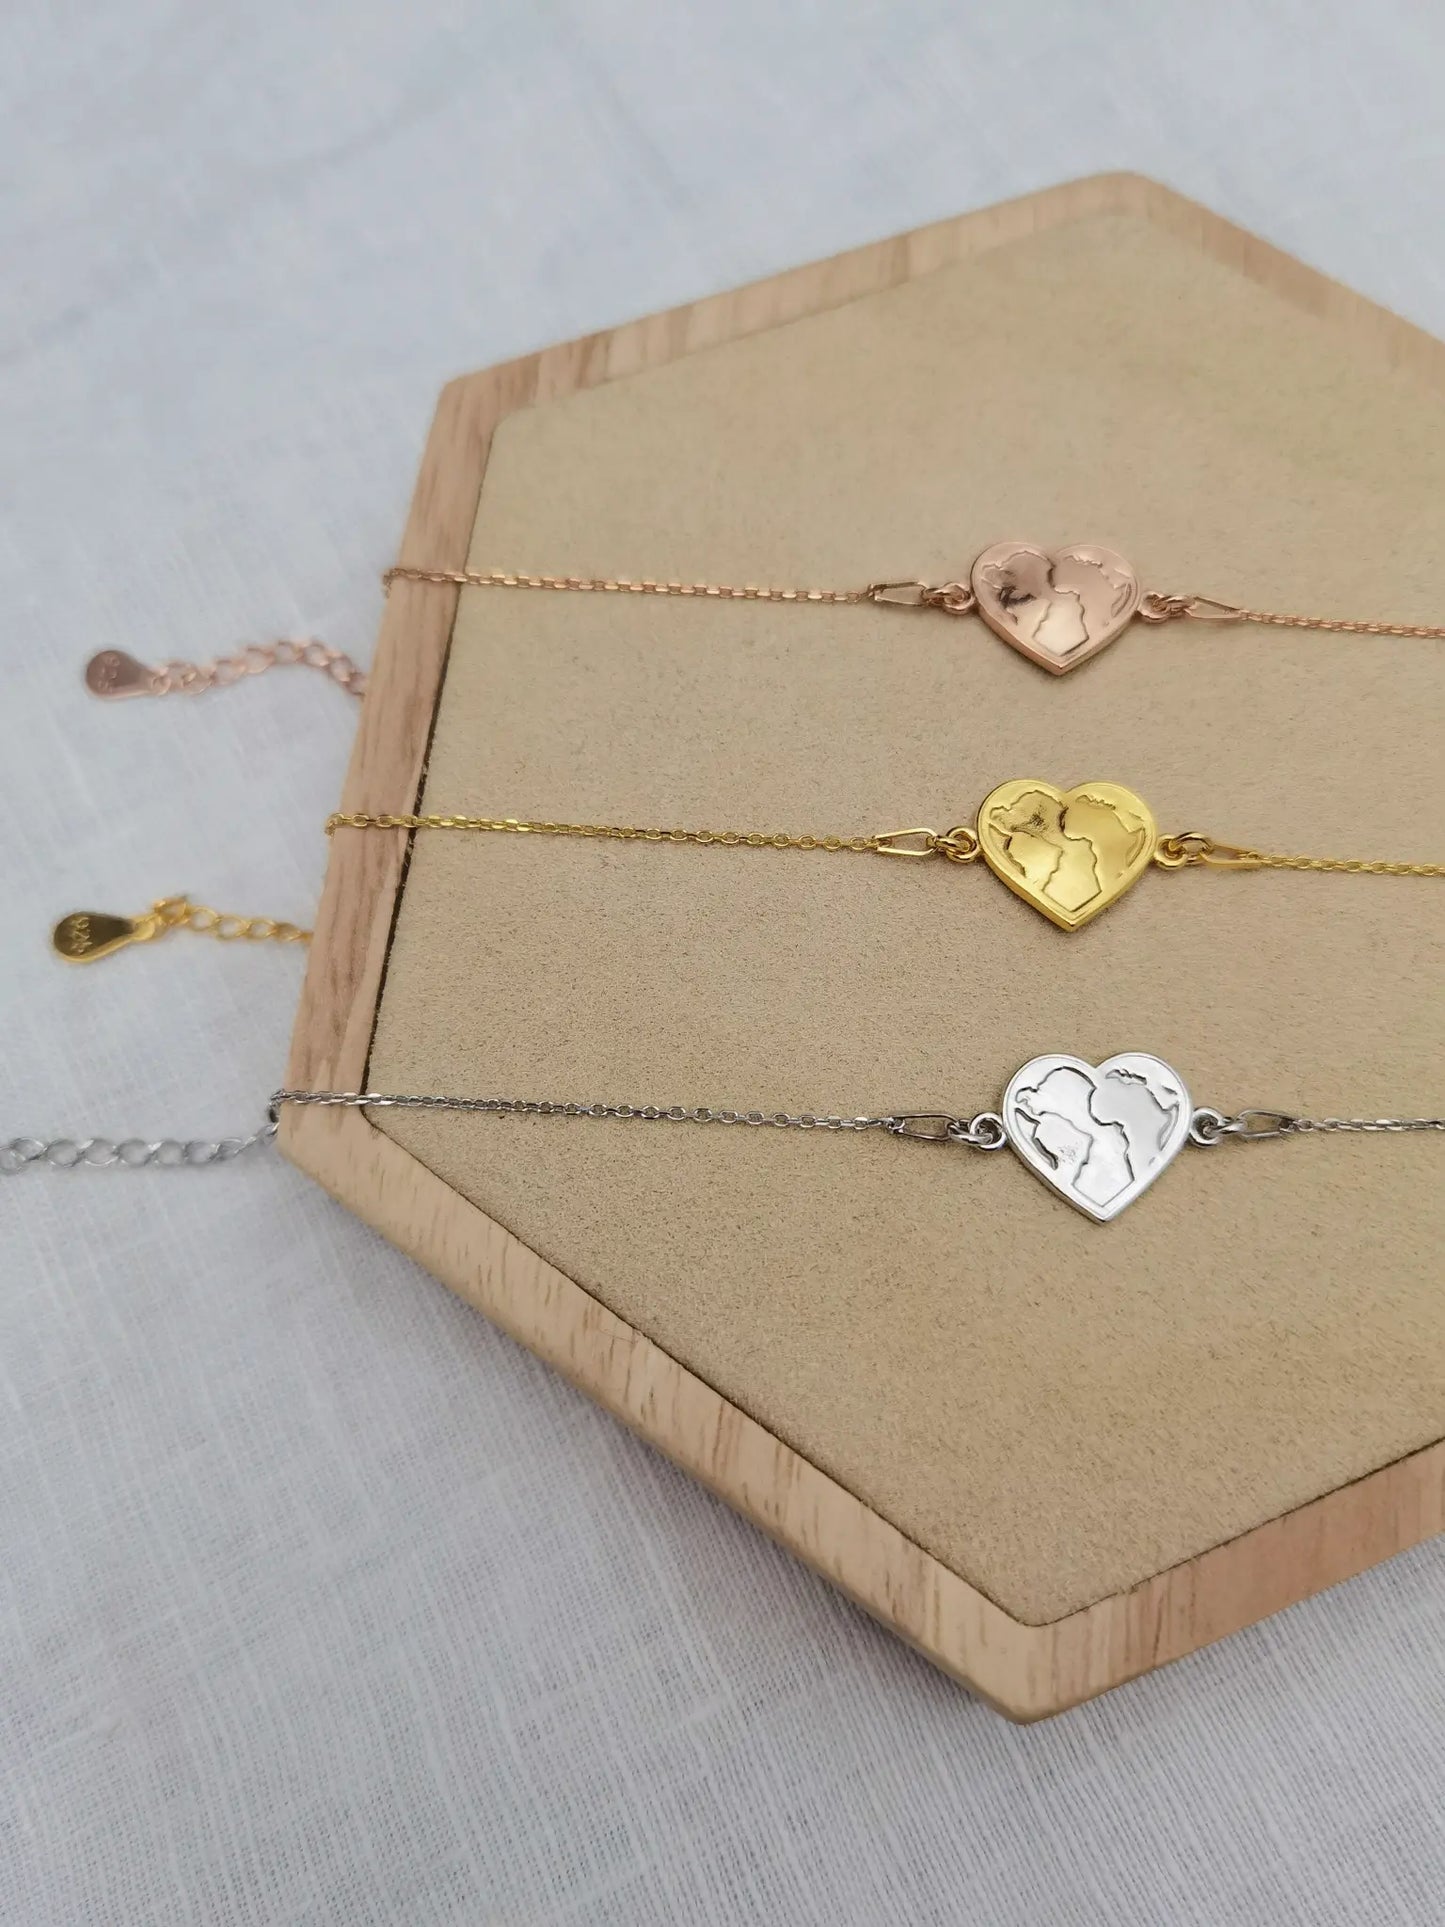 Herz Weltkarte Armband in silber, gold und roségold auf einem Holz Sechseck